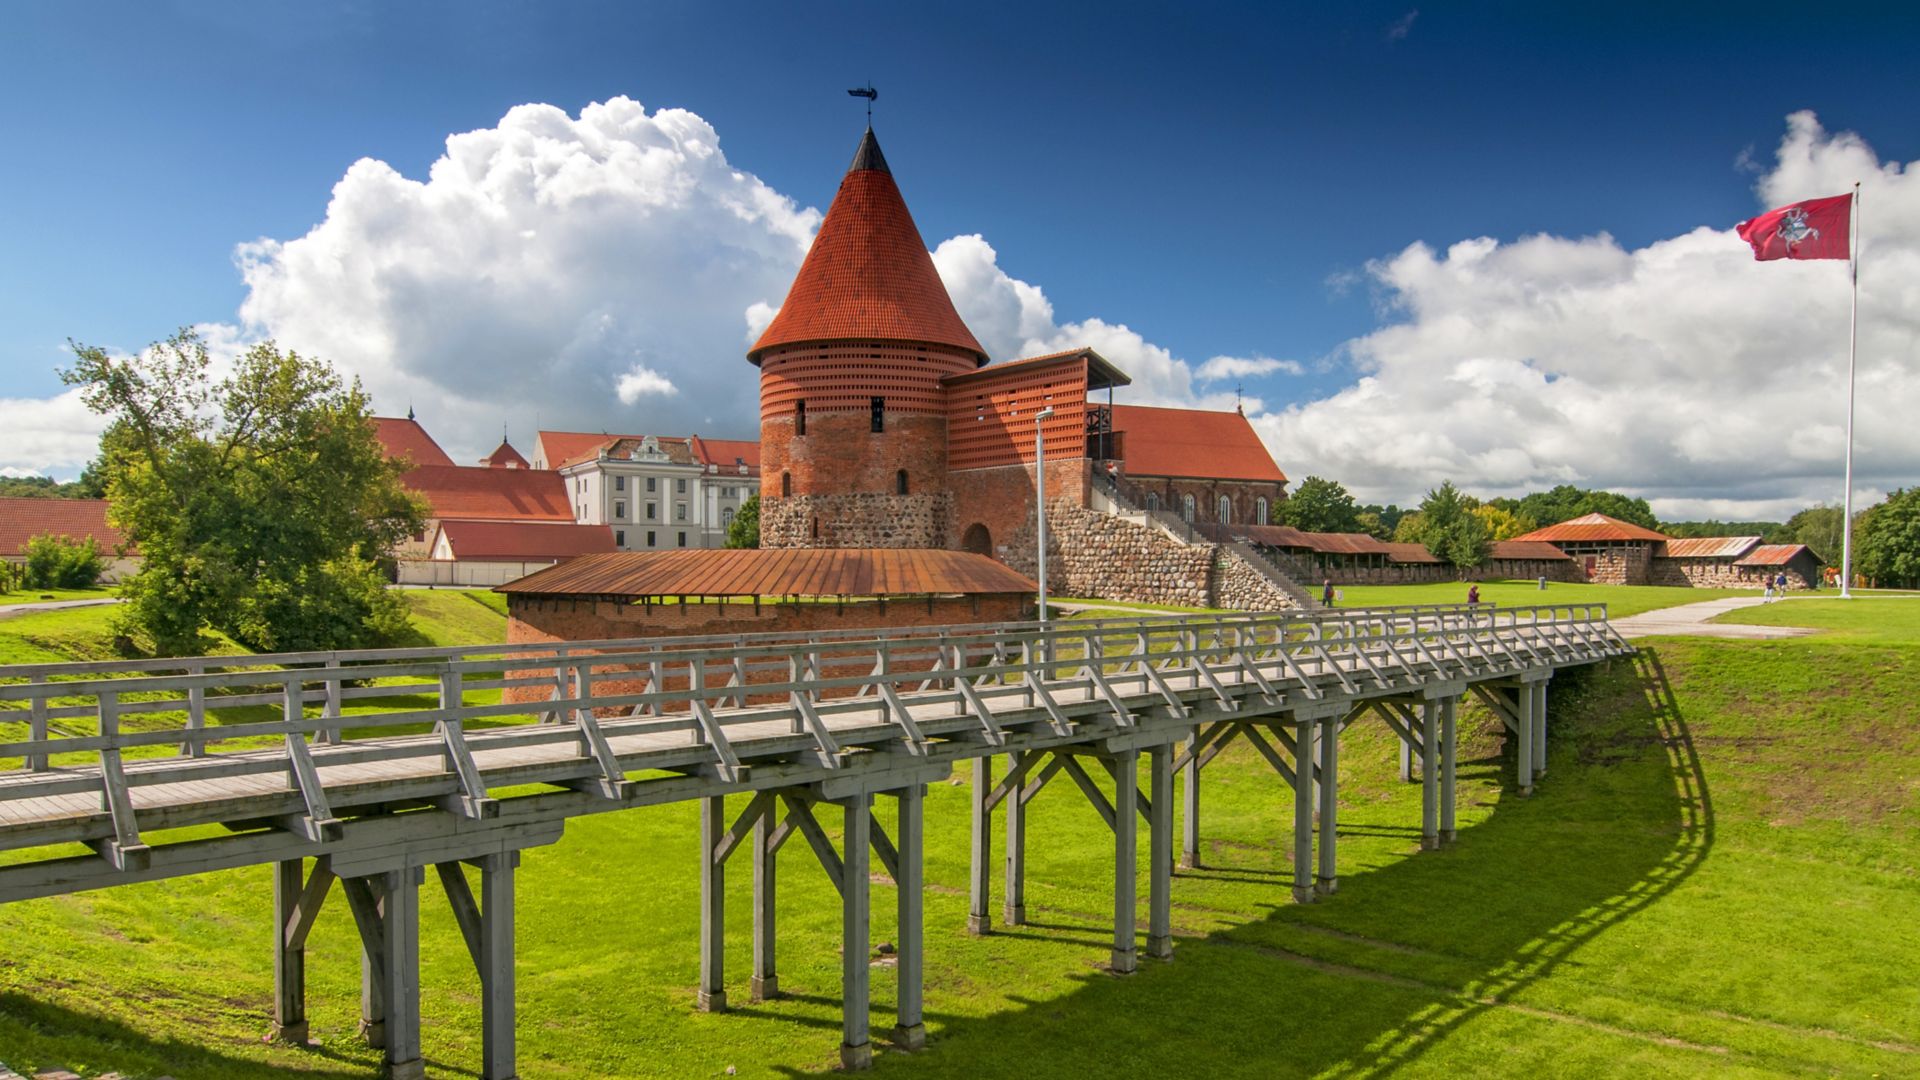 Château de Kaunas, édifié au milieu du XIVe siècle, dans le style gothique, à Kaunas, en Lituanie.